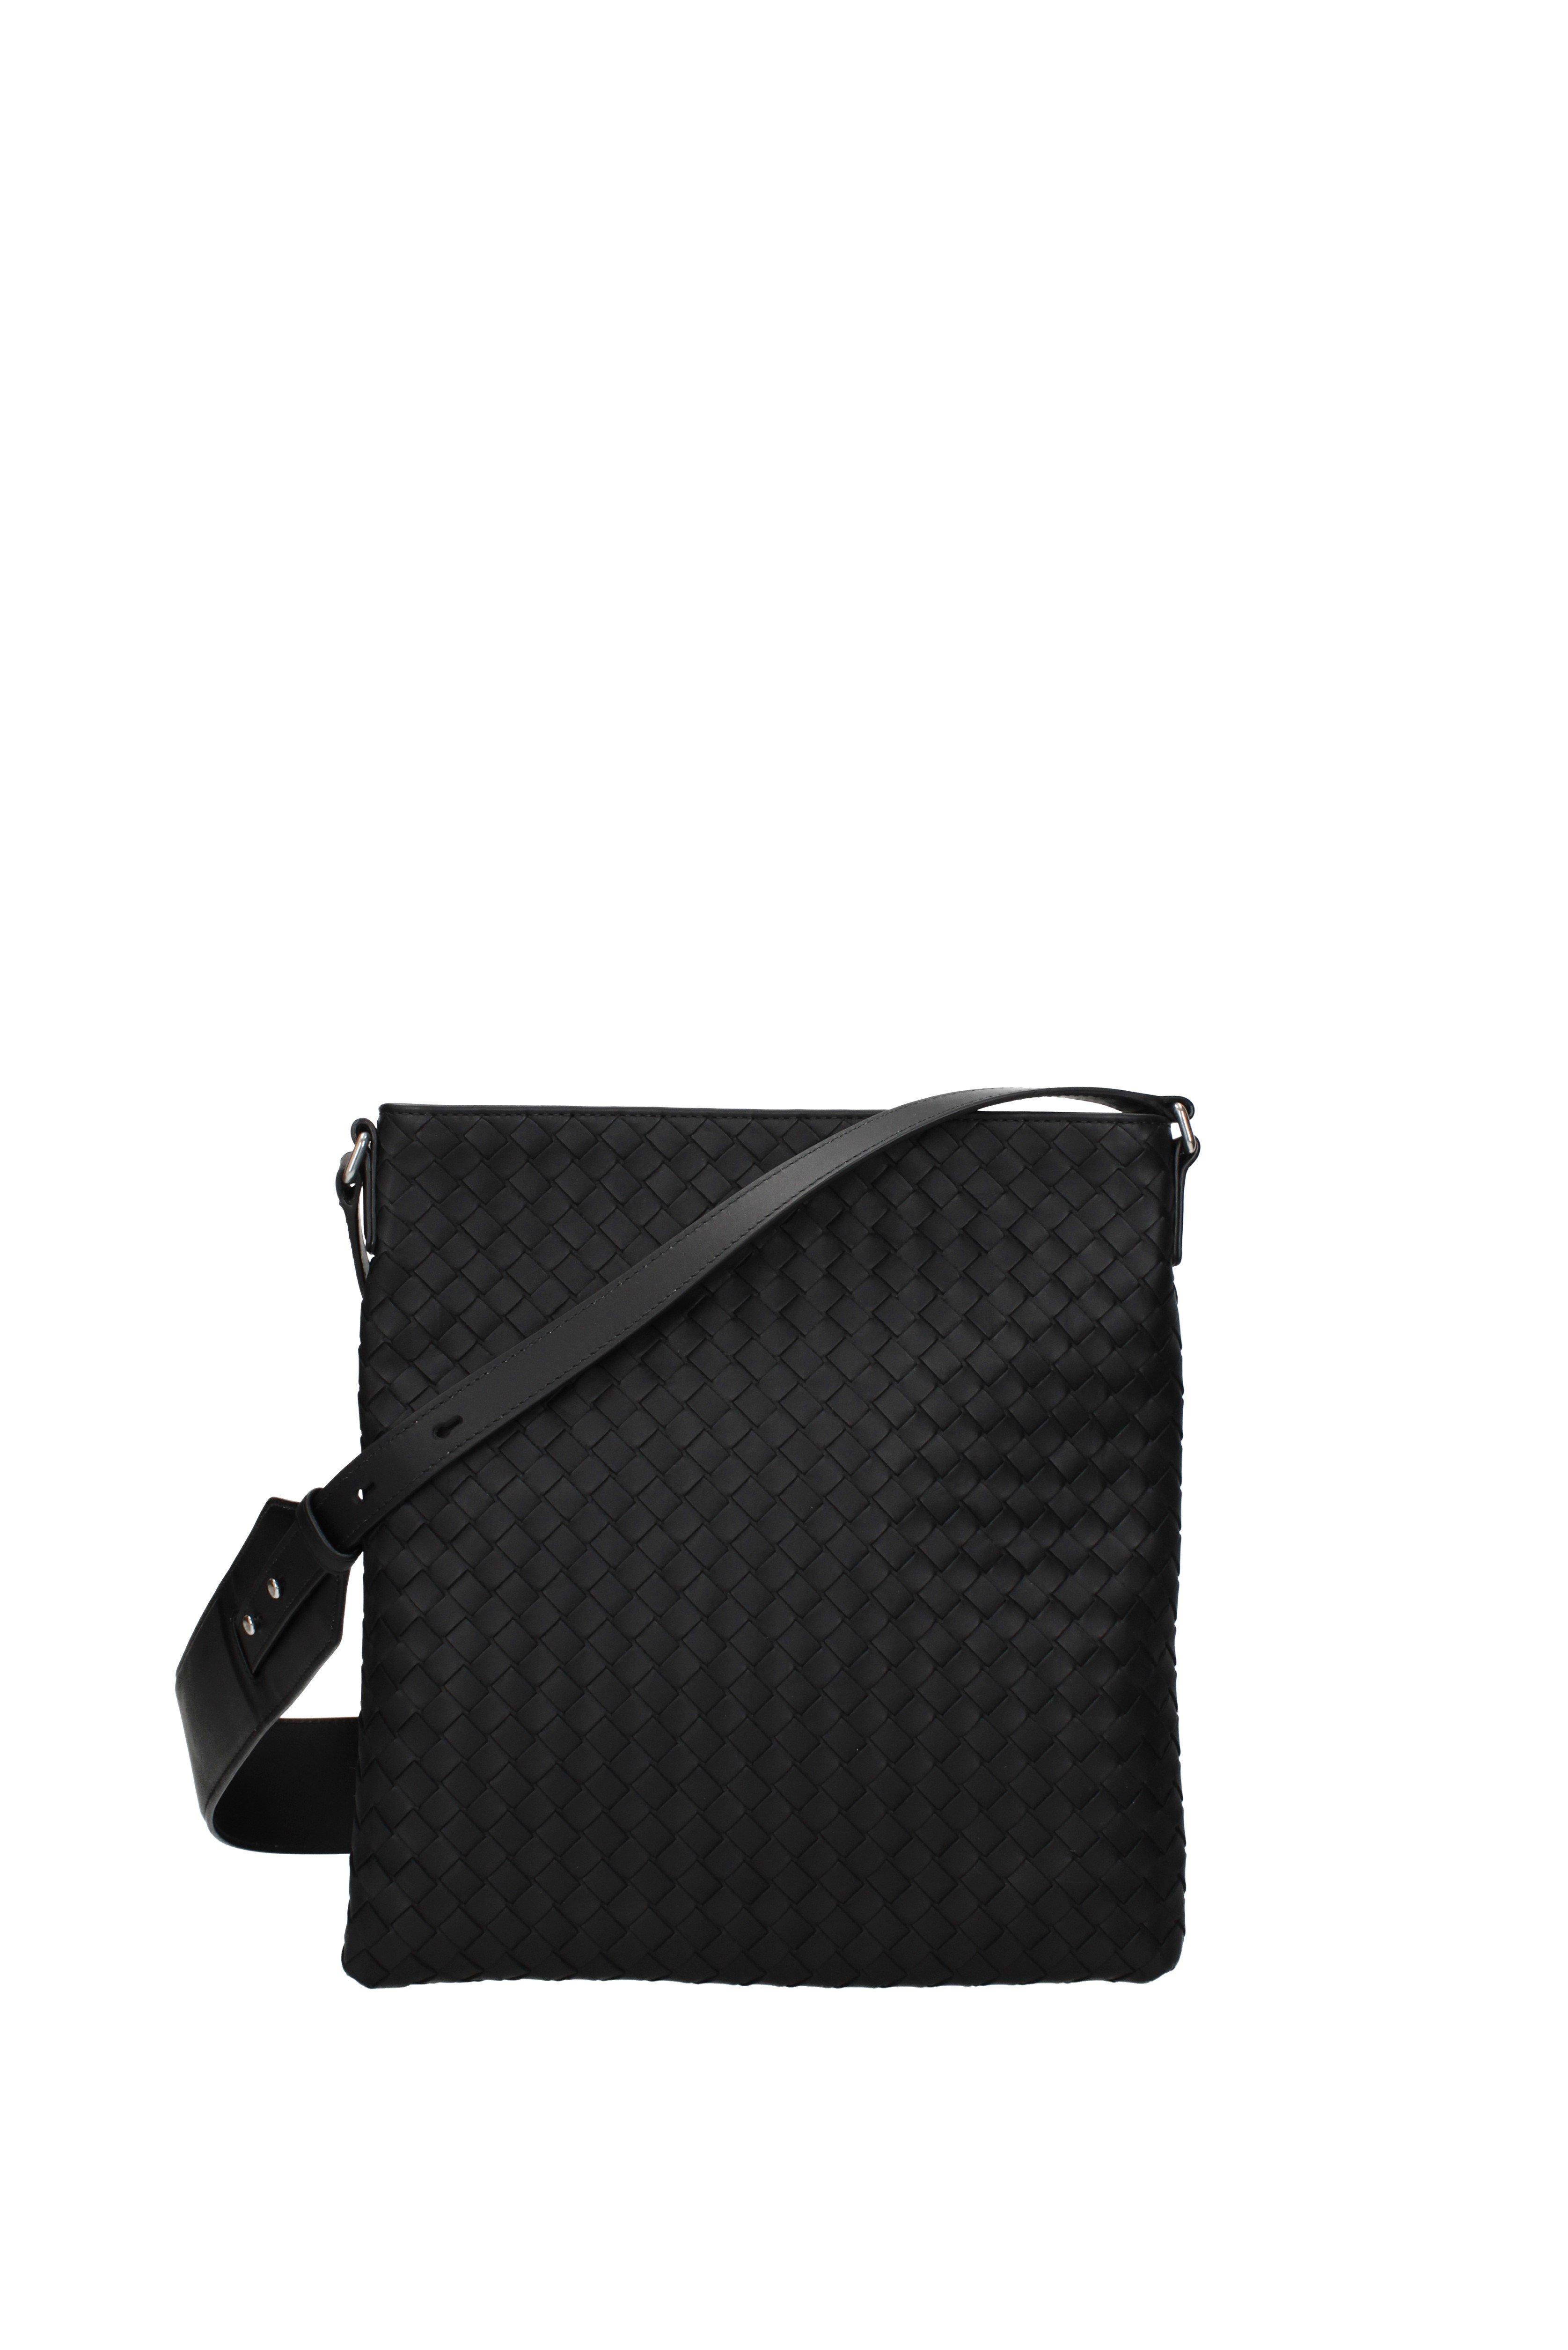 Bottega Veneta Black Crossbody Bag for Men - Lyst